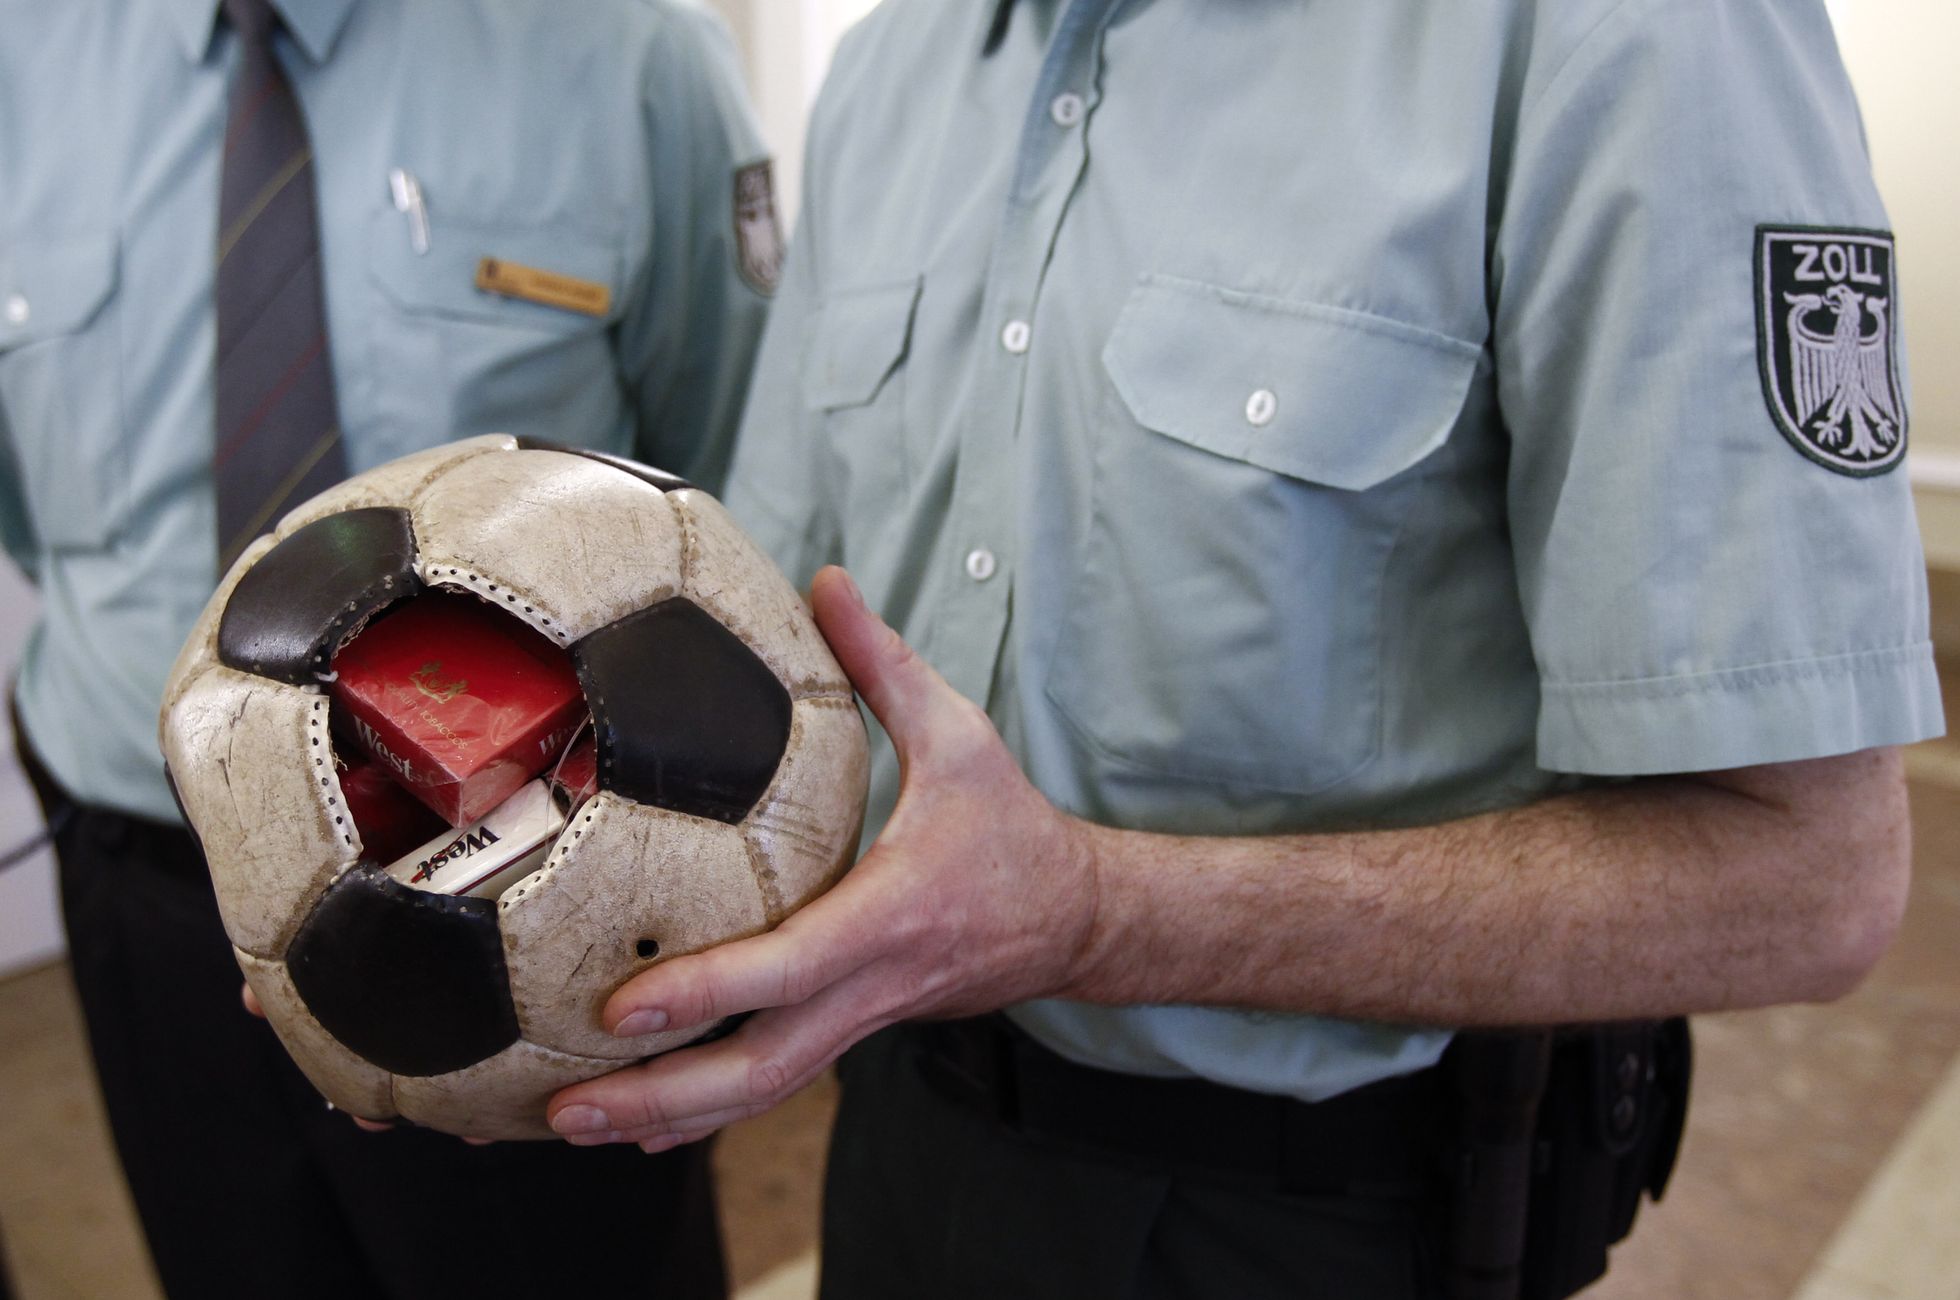 Немецкий таможенник демонстрирует футбольный мяч, использовавшийся как тайник для контрабанды сигарет.